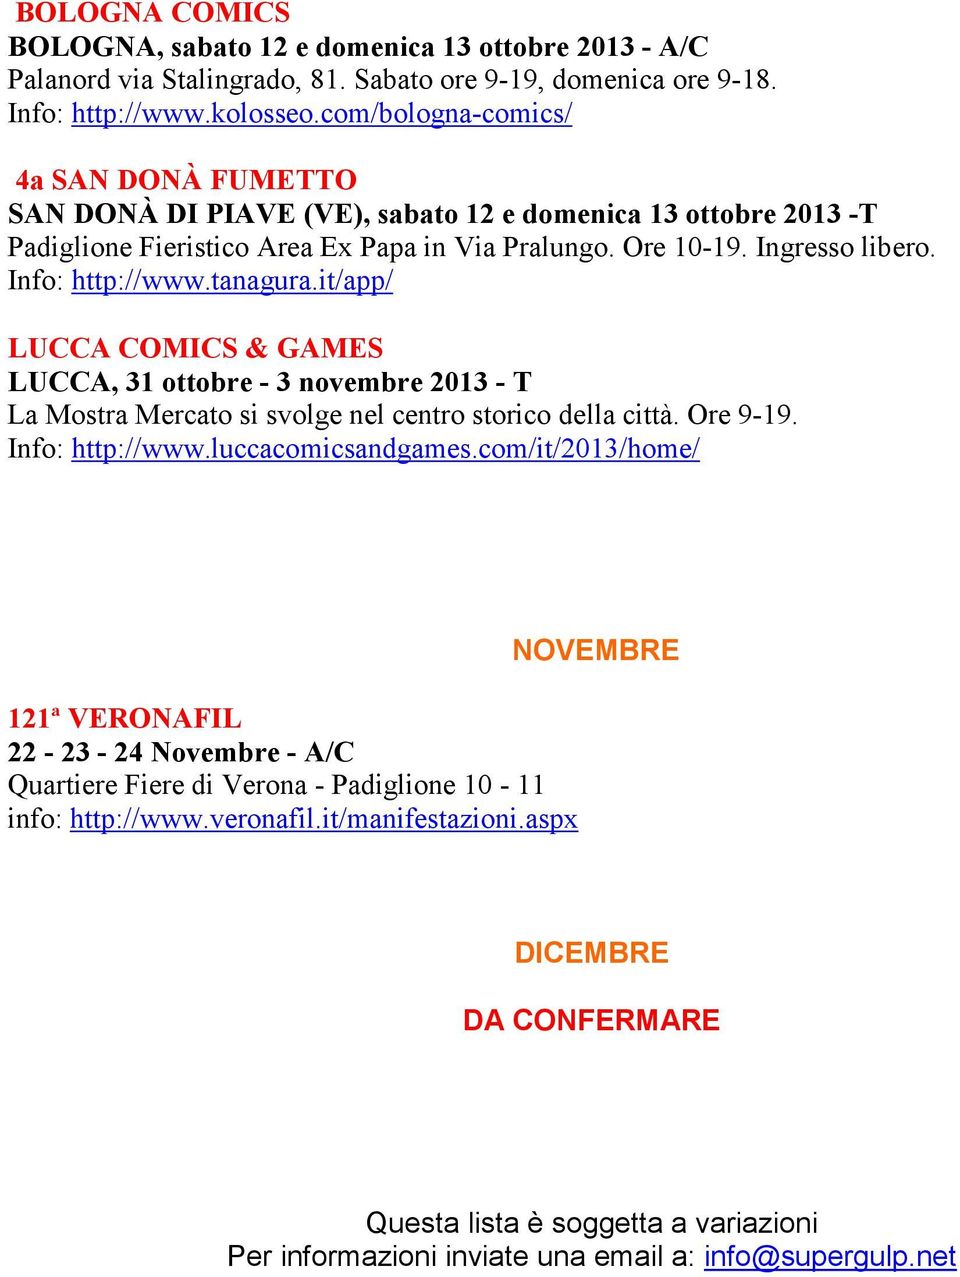 Info: http://www.tanagura.it/app/ LUCCA COMICS & GAMES LUCCA, 31 ottobre - 3 novembre 2013 - T La Mostra Mercato si svolge nel centro storico della città. Ore 9-19. Info: http://www.